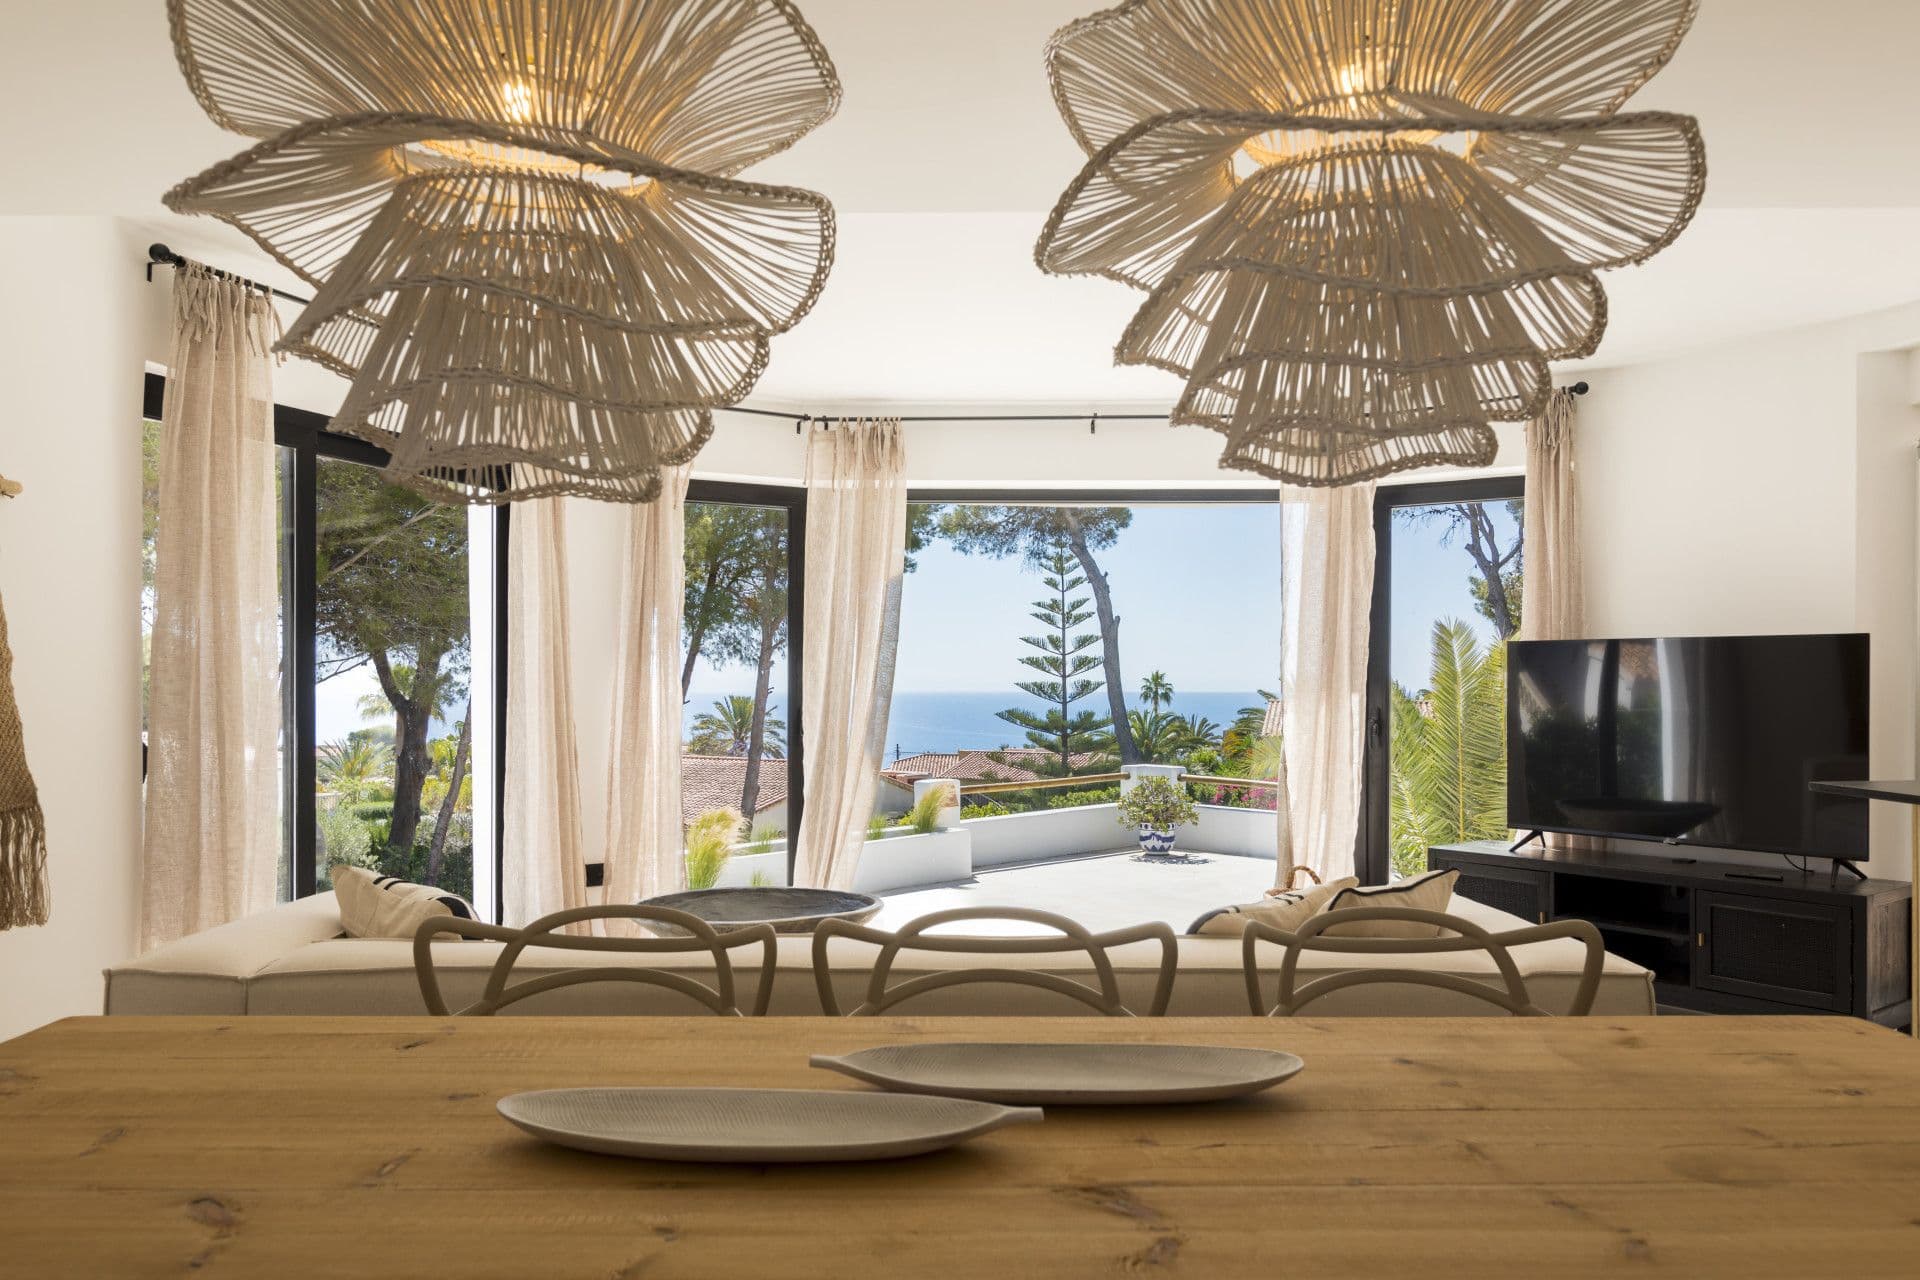 Villa de style Ibiza avec vue sur la mer dans la région de Cap Negre, Javea (Alicante)